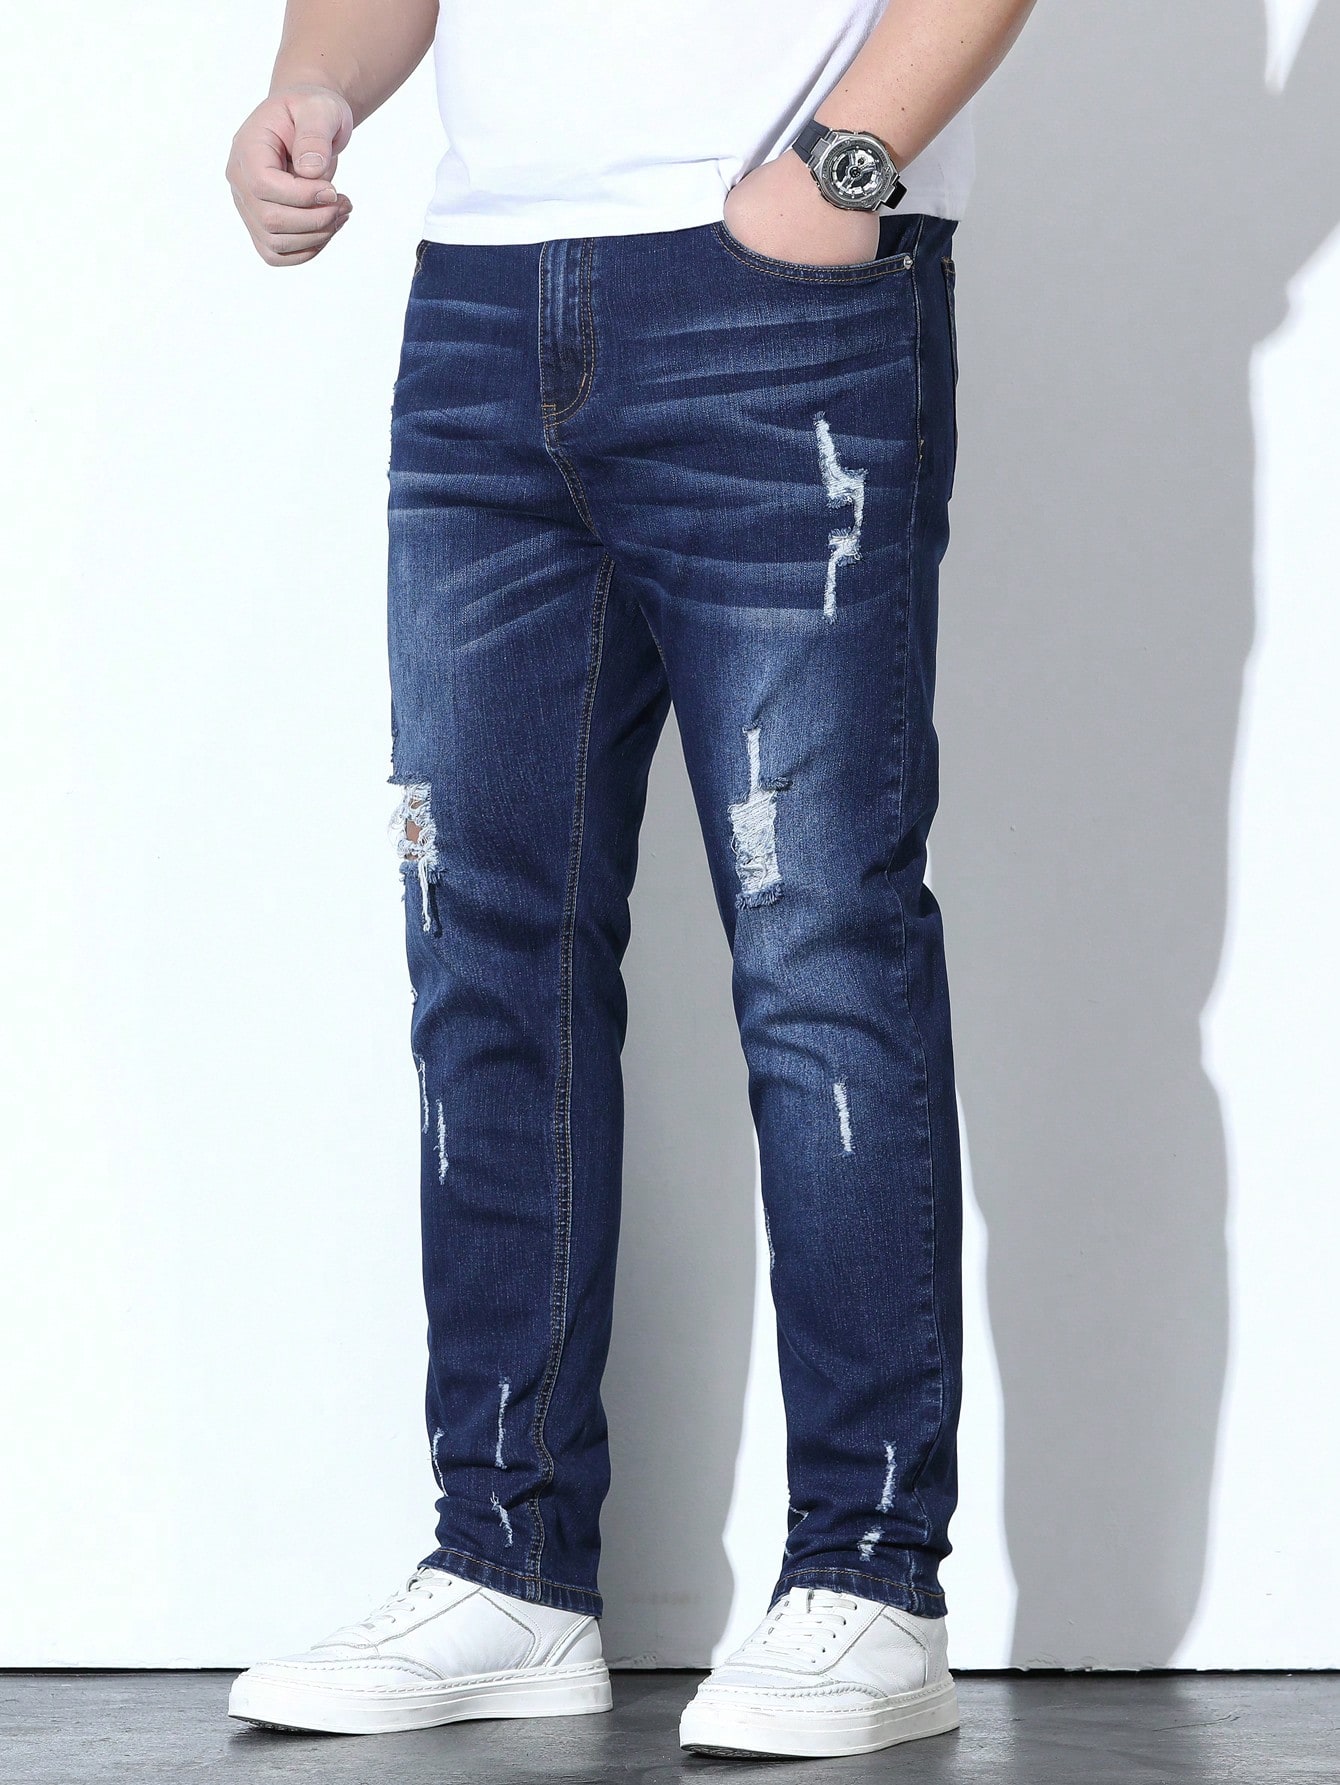 Мужские потертые джинсы больших размеров Manfinity Homme с кошачьими усами, синий